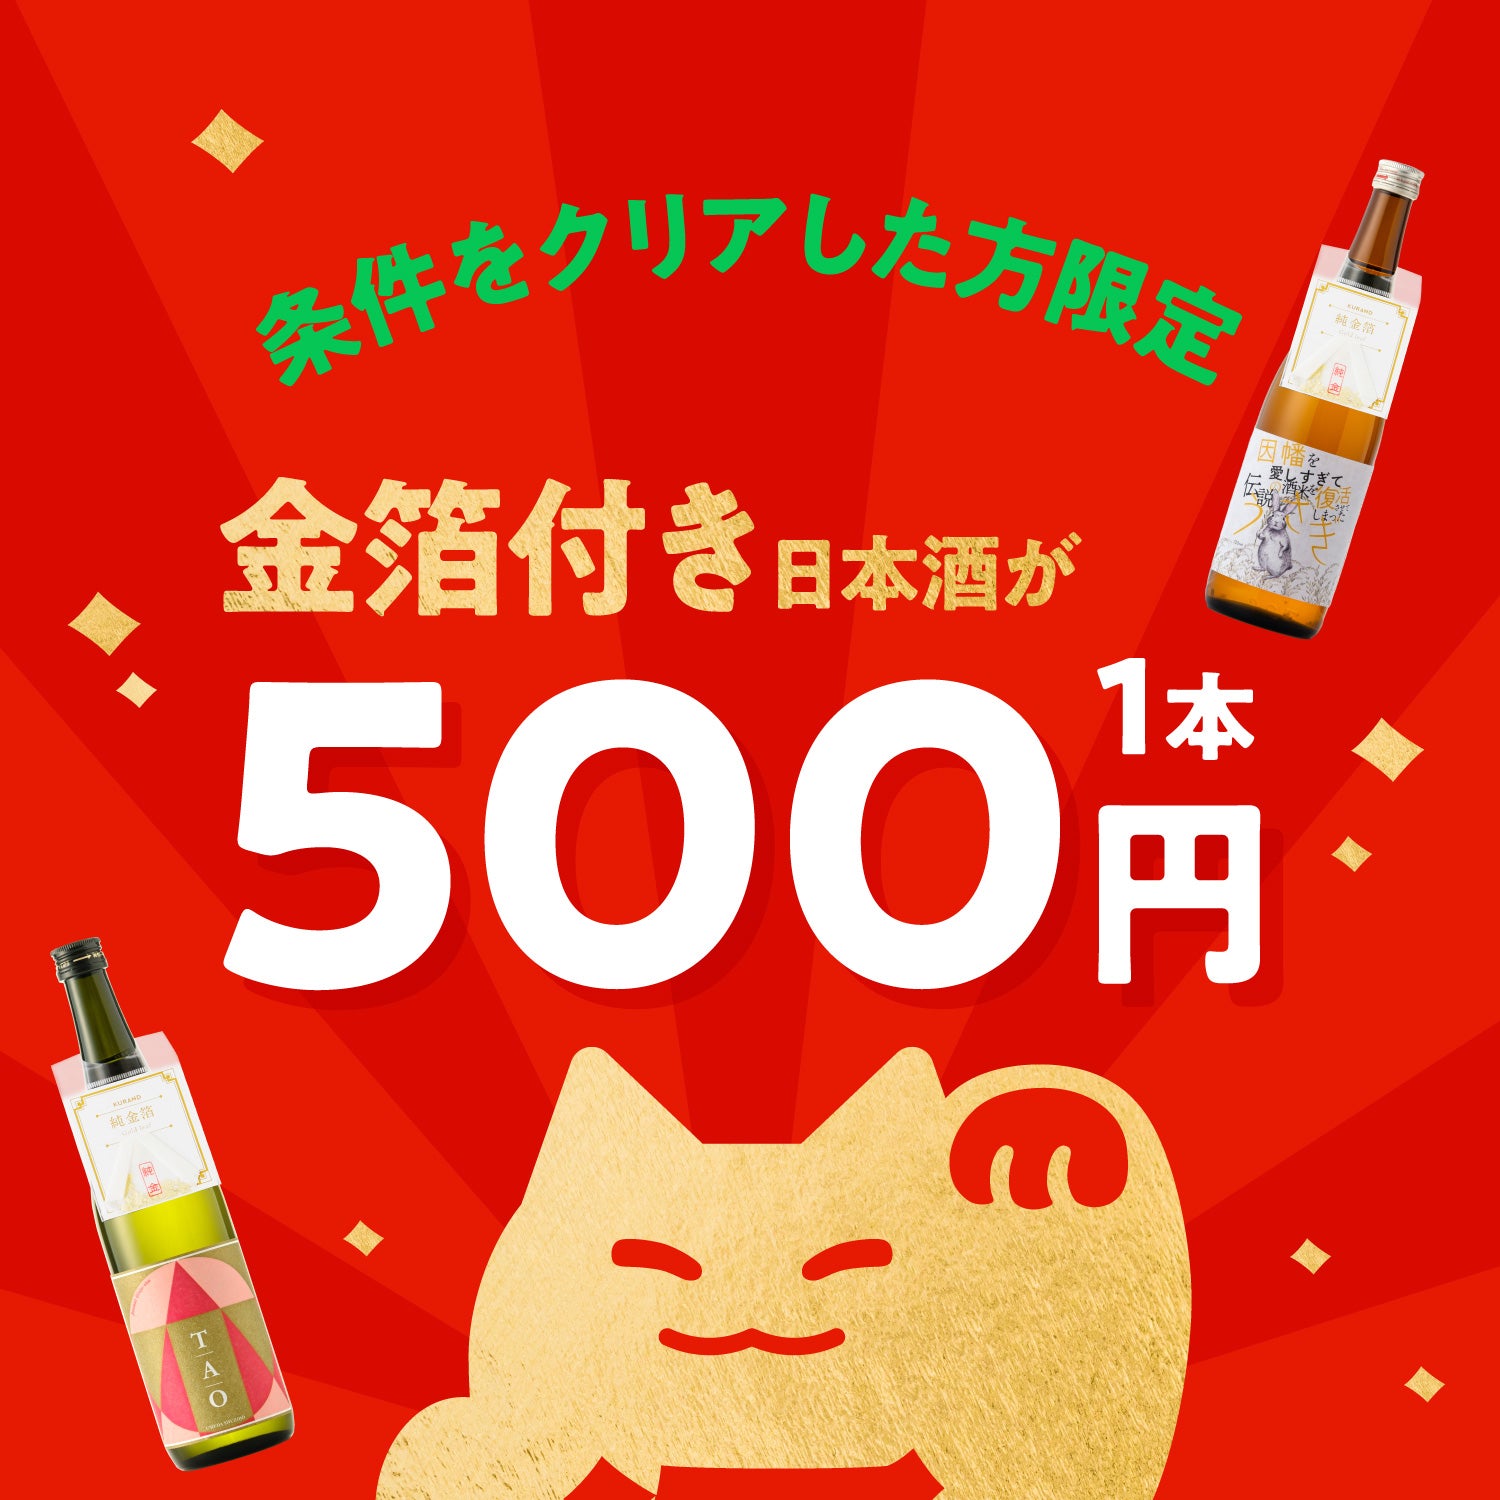 【条件をクリアした人限定】金箔付き日本酒1本500円キャンペーン